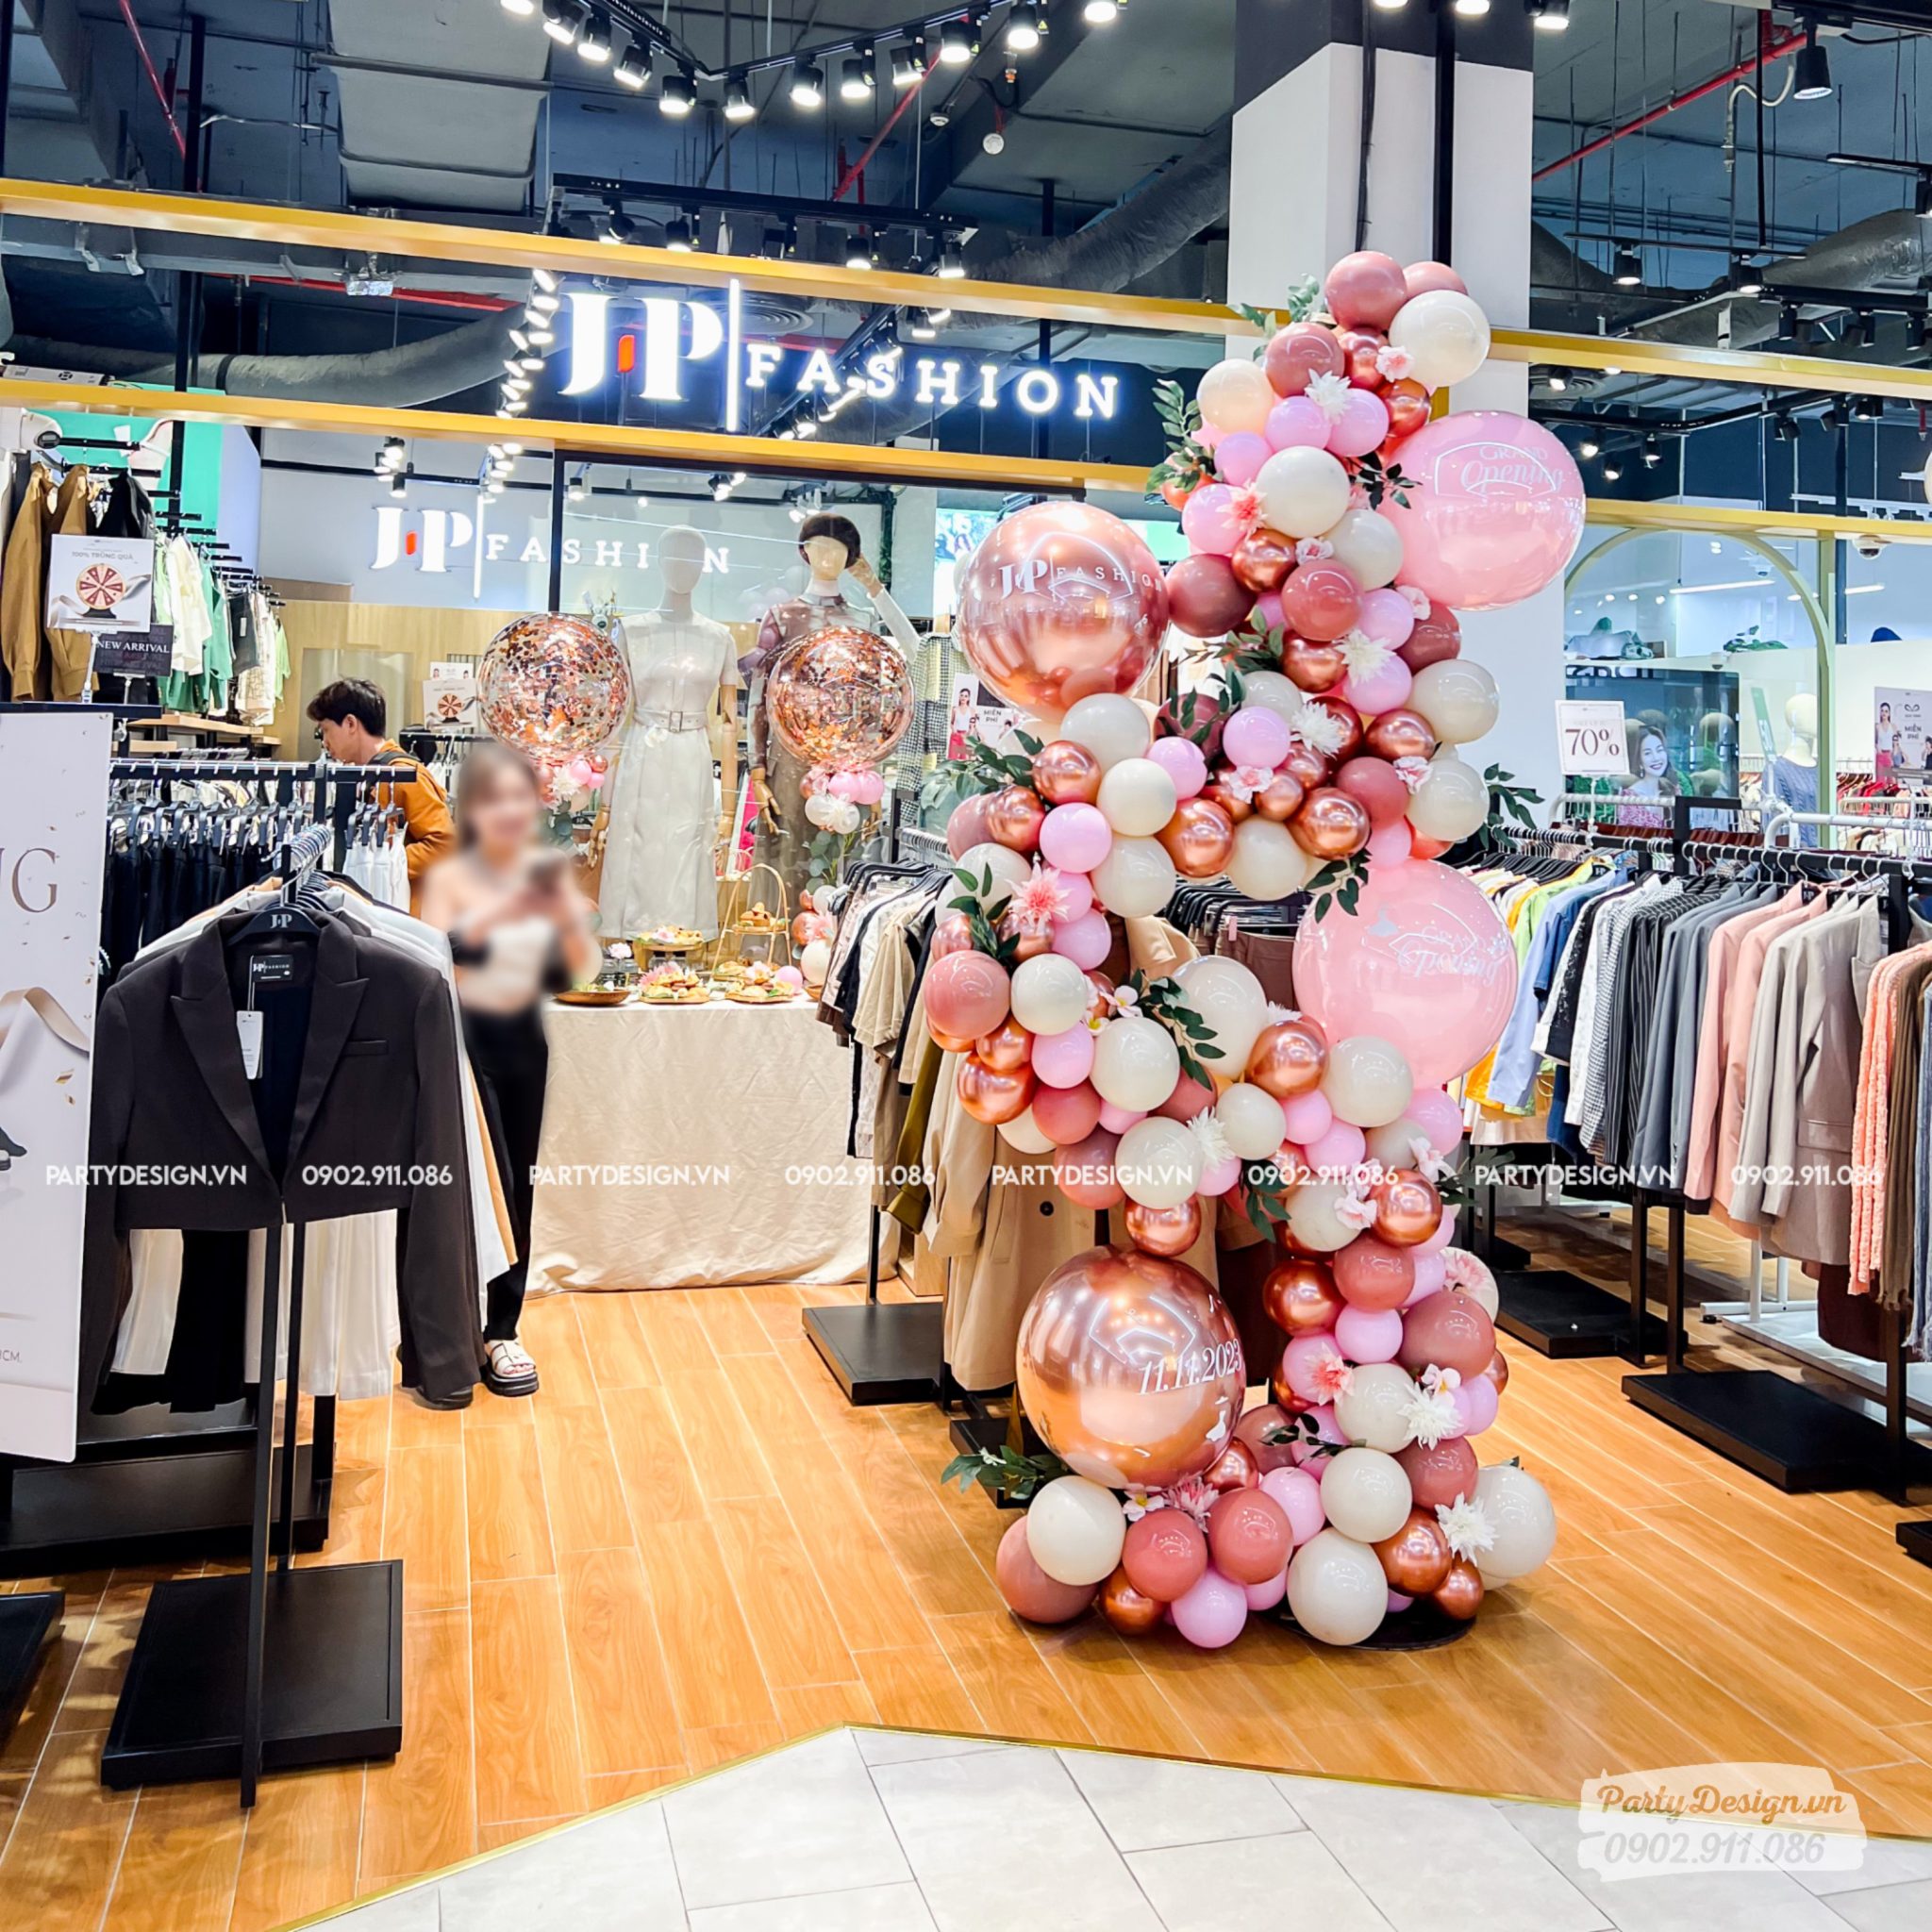 Trang trí khai trương cửa hàng J-P Fashion theo kiểu đơn giản với trụ bong bóng cách điệu